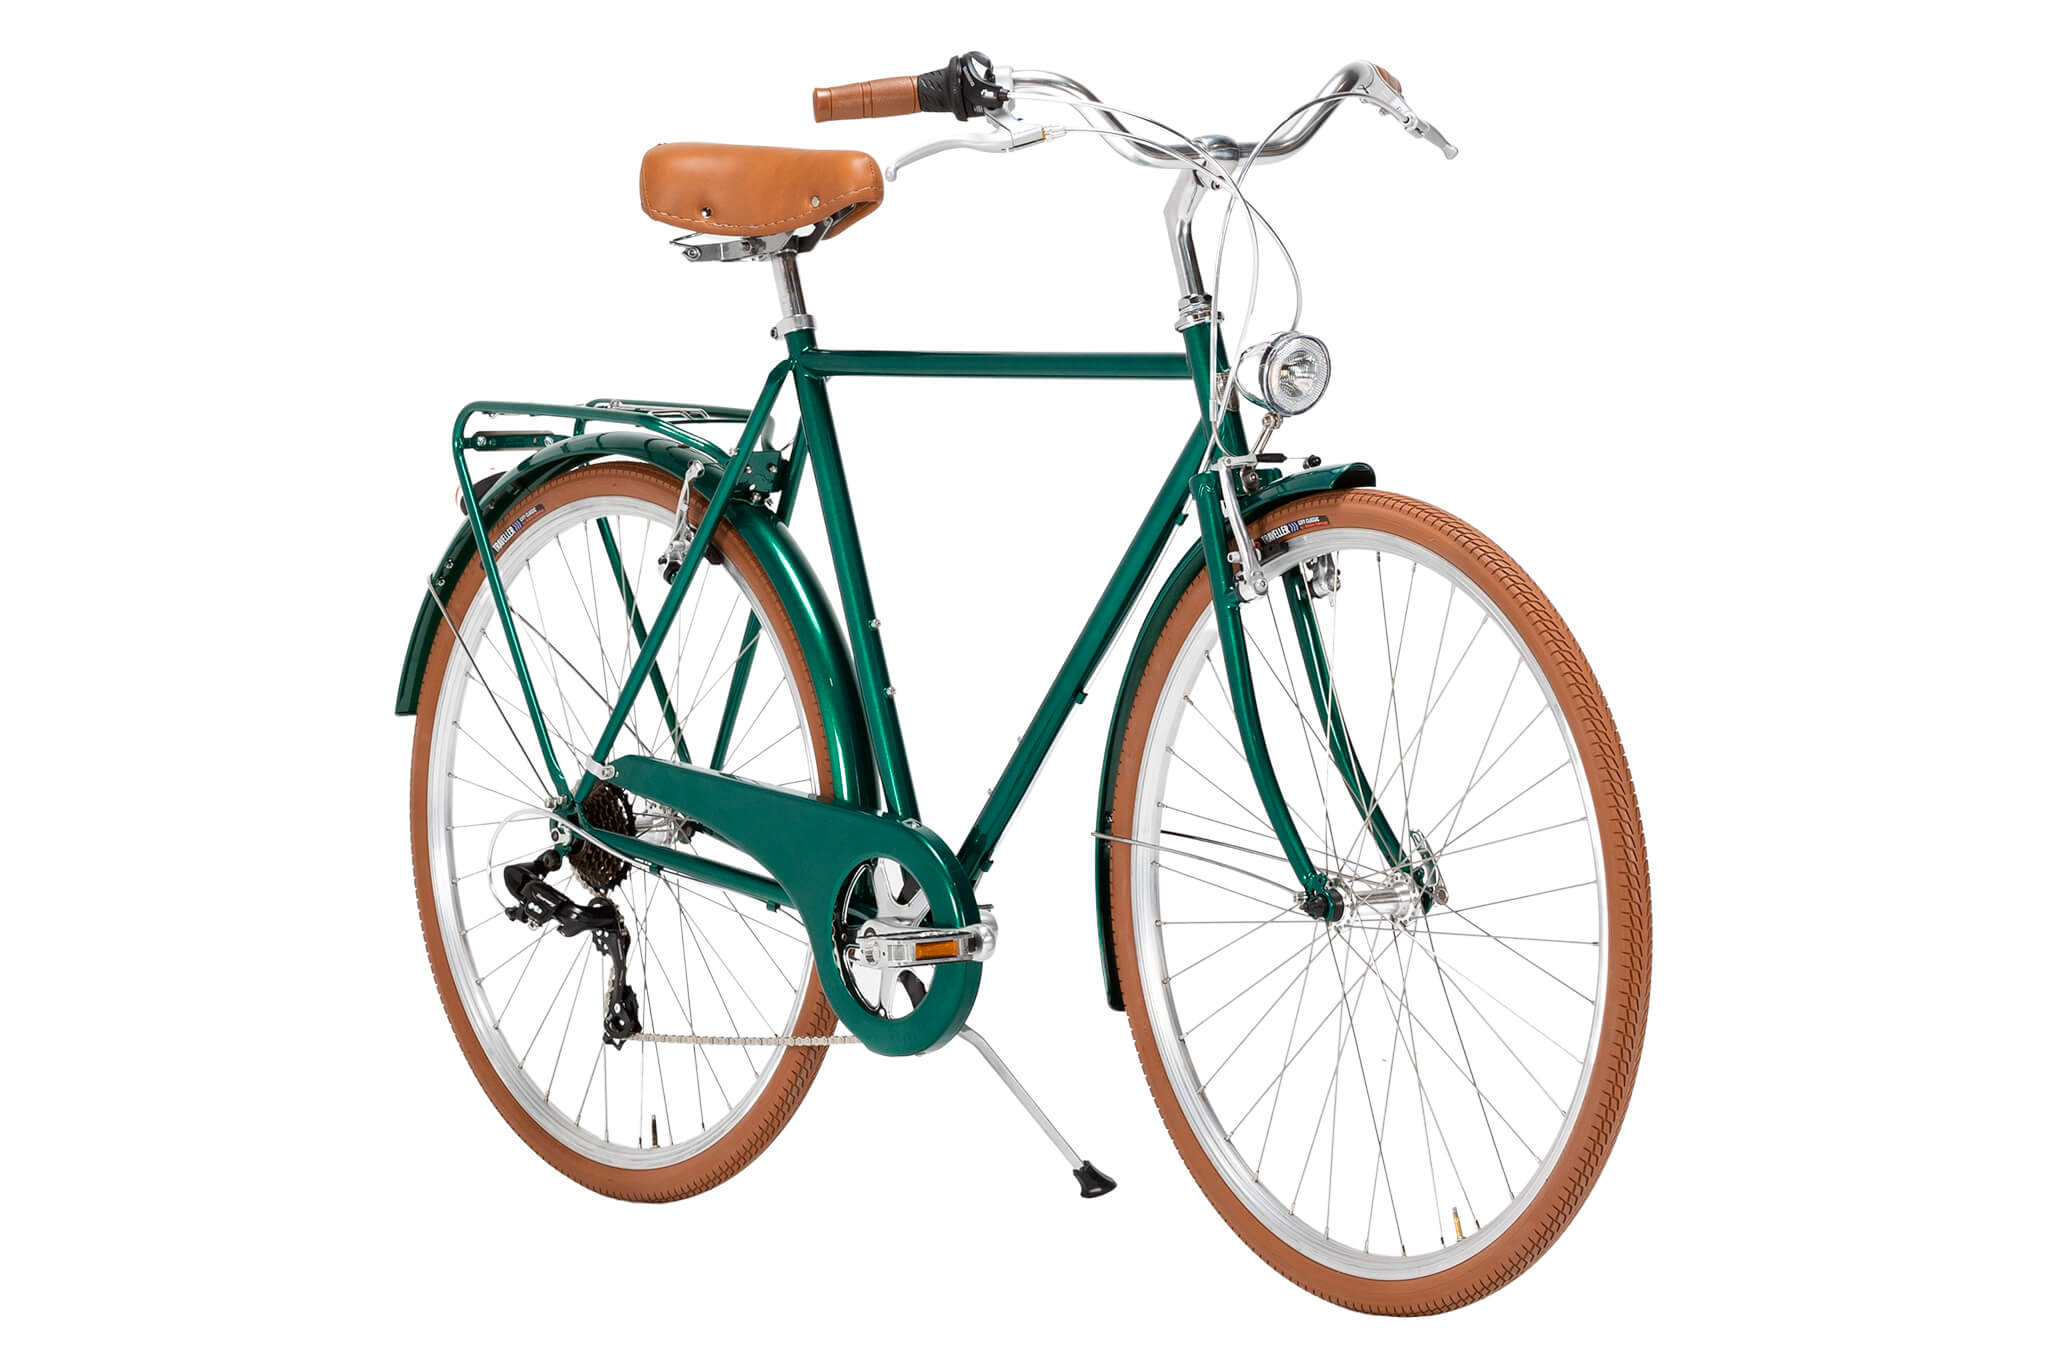 Bicicleta Capri Lyon Englisch Grün 7 Gang Fahrrad kaufen